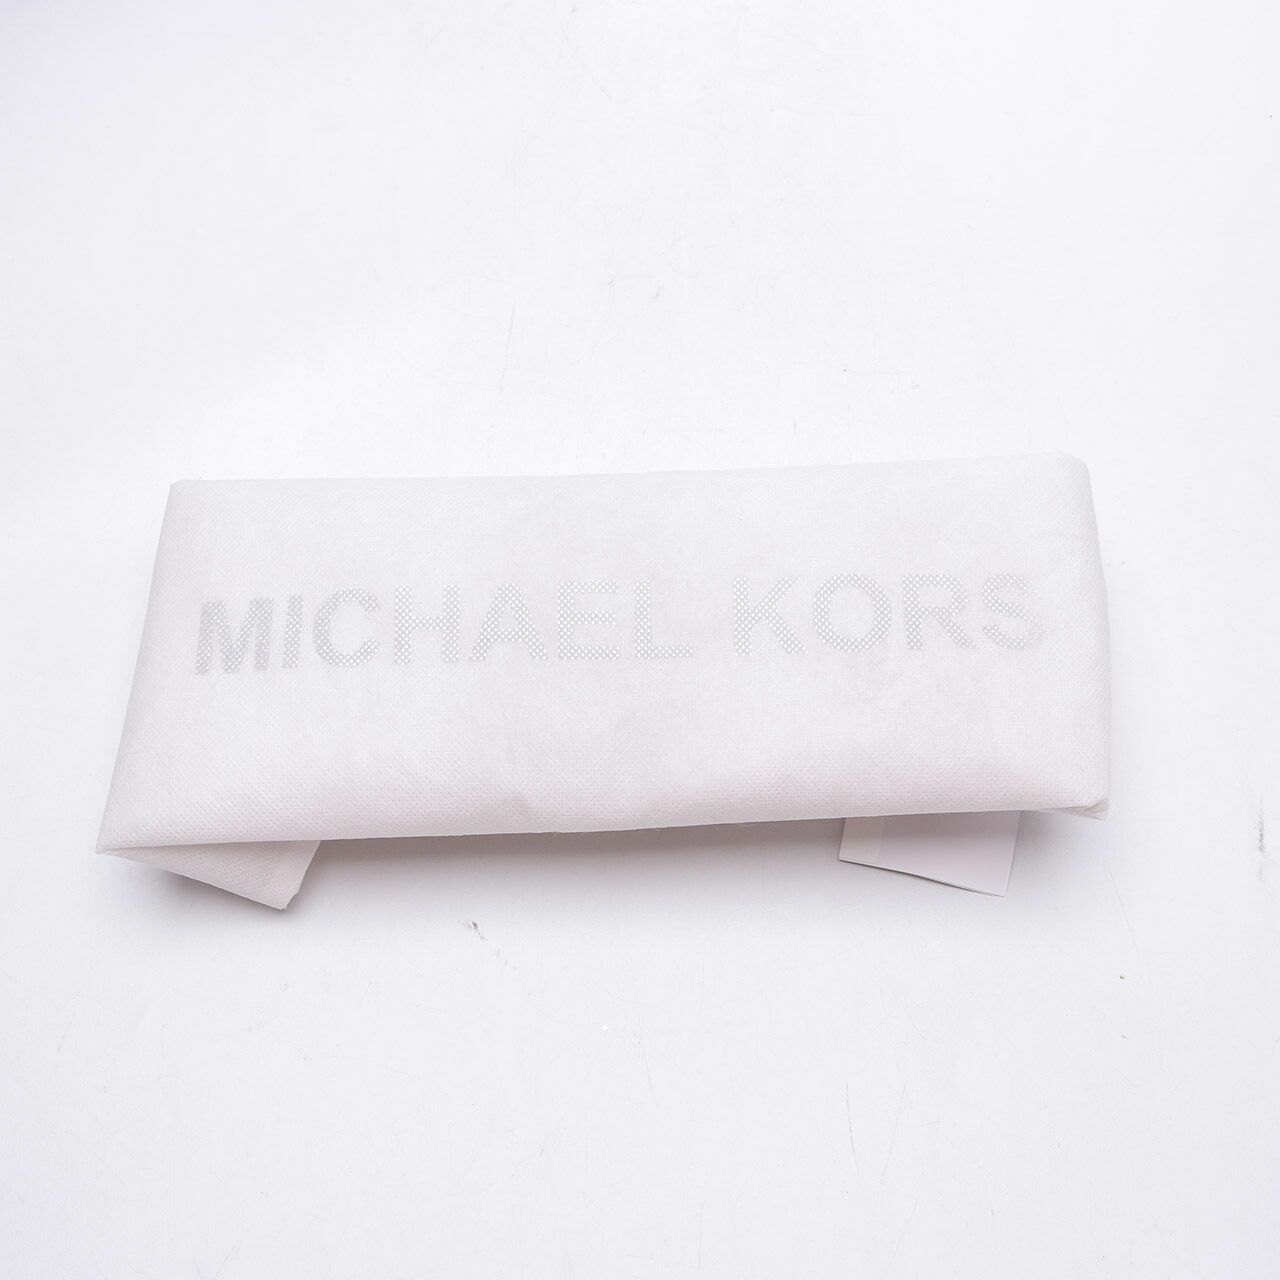 Michael Kors Selma Black Satchel Bag